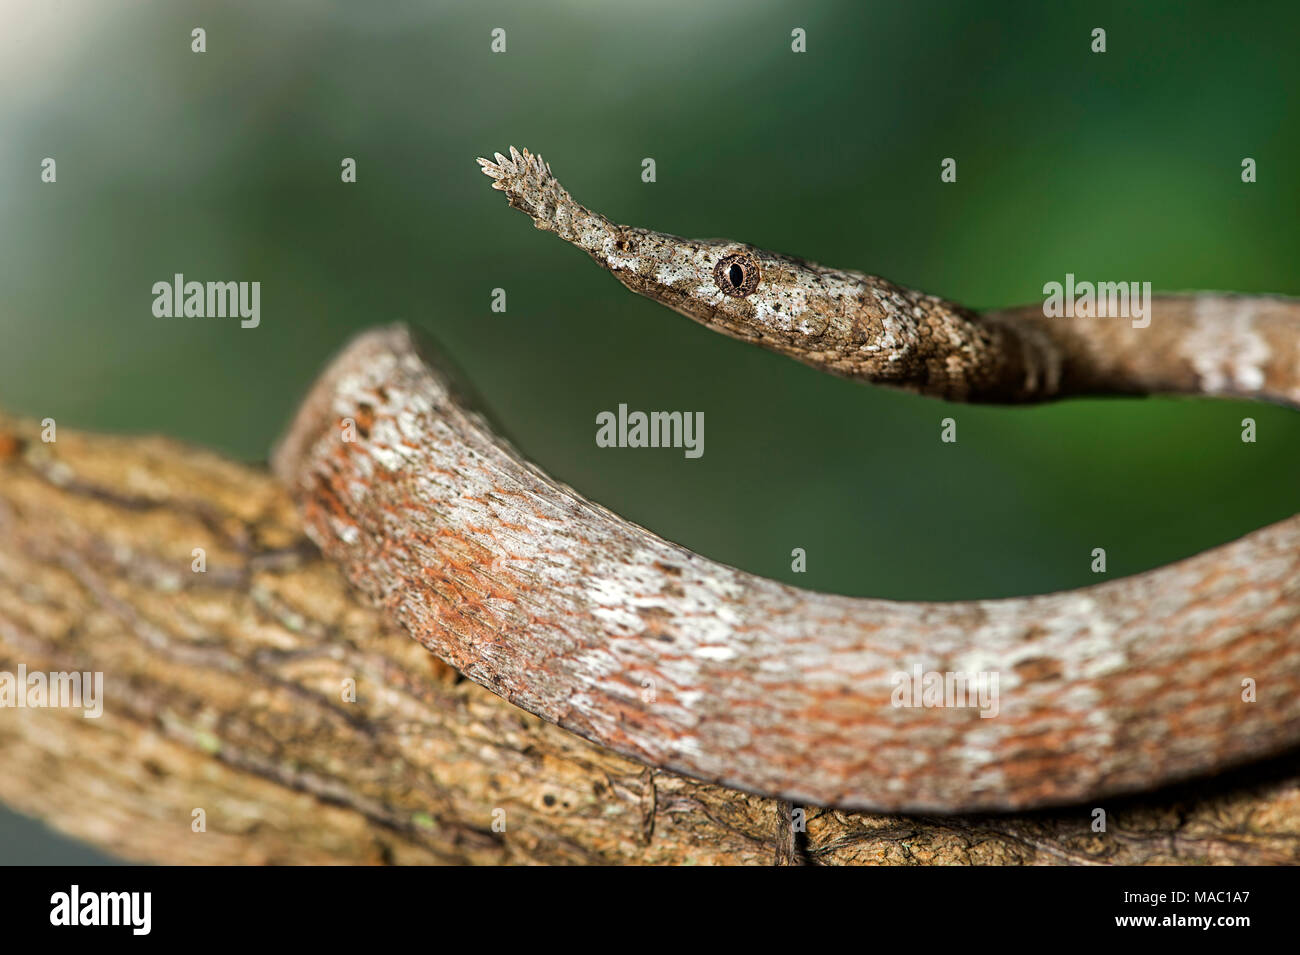 Feuille malgache femelle couleuvre (Langaha madagascariensis) avec son museau aplati, en forme de feuilles, de la famille des Colubridae, Ankanin Ny Nofy, Madagascar Banque D'Images